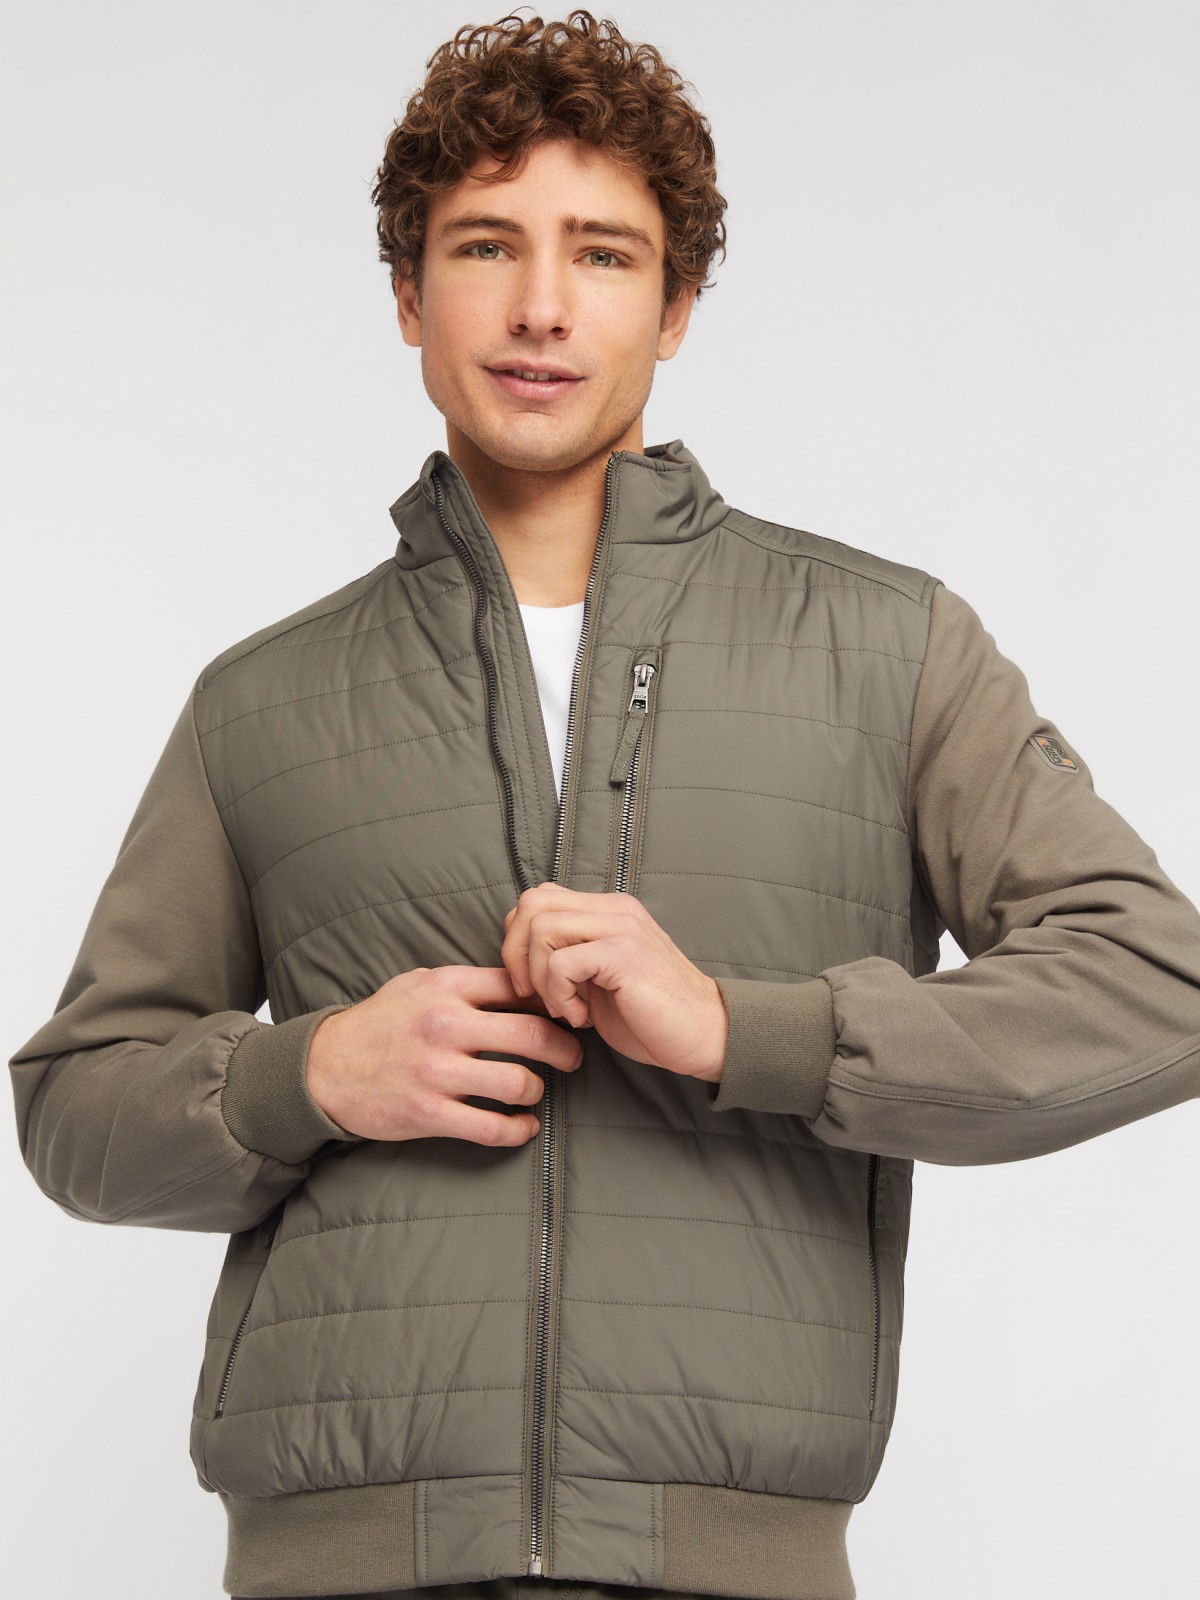 Утеплённая куртка-толстовка с воротником-стойкой zolla 014135102074, цвет хаки, размер S - фото 1